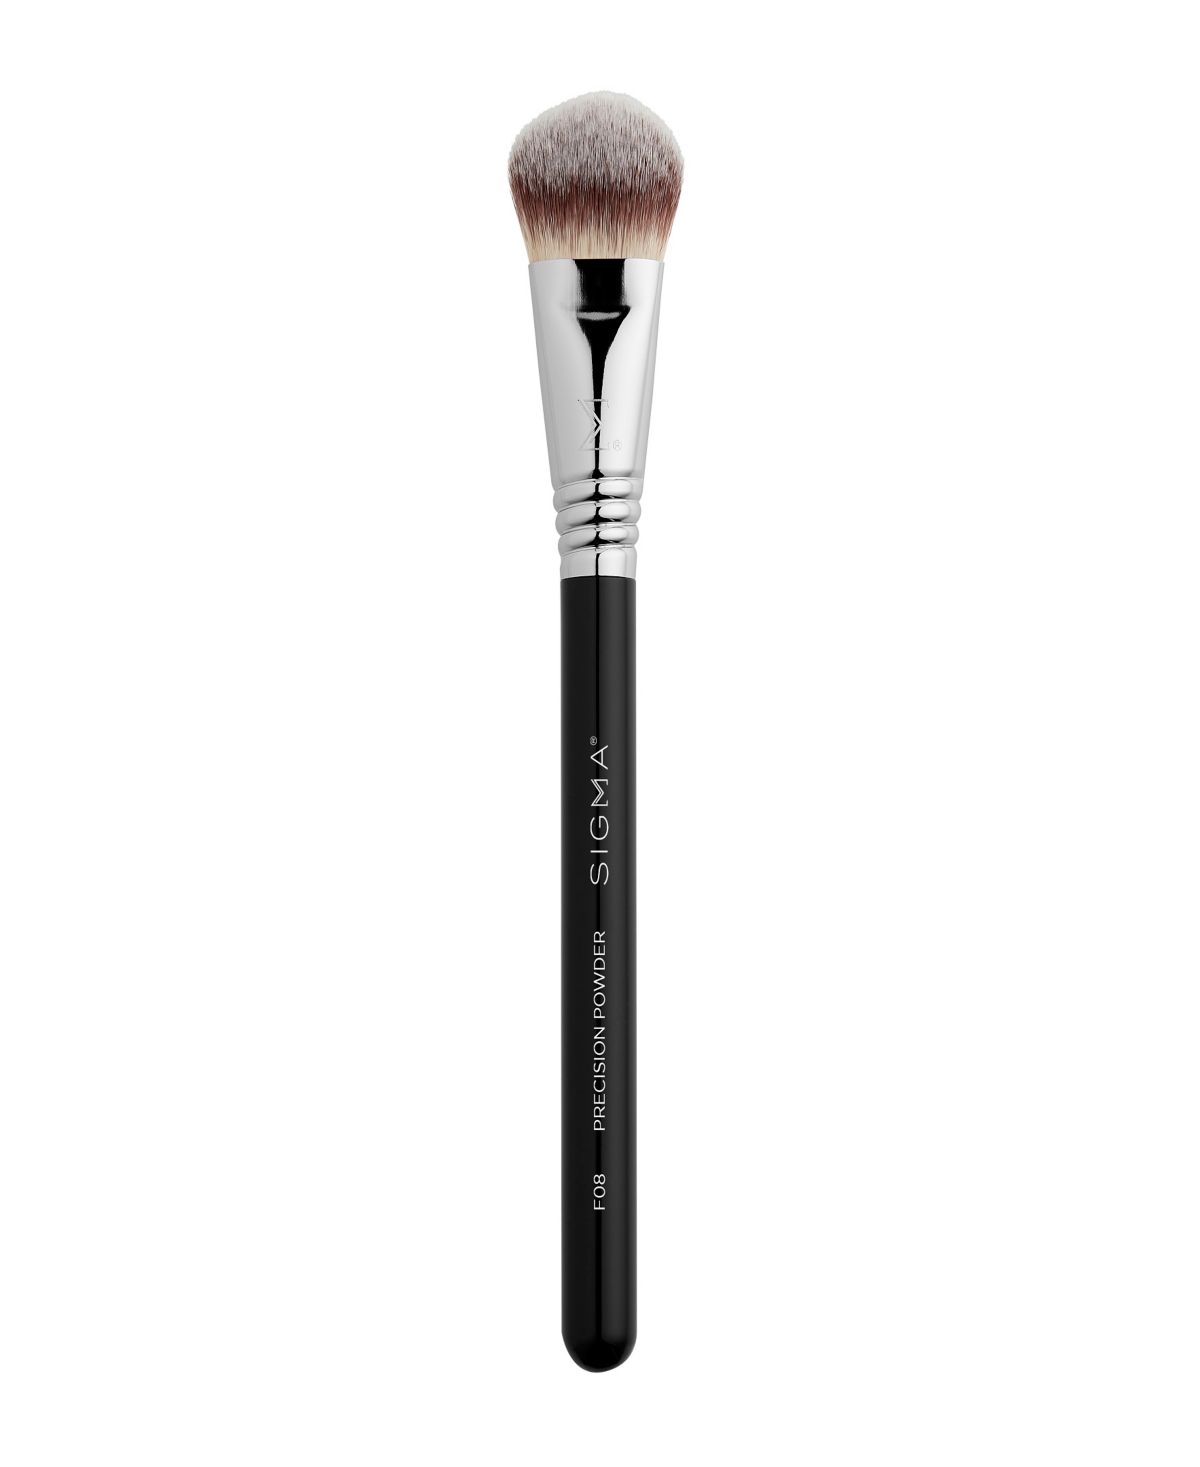 Sigma Beauty F08 Precision Powder Brush In Black